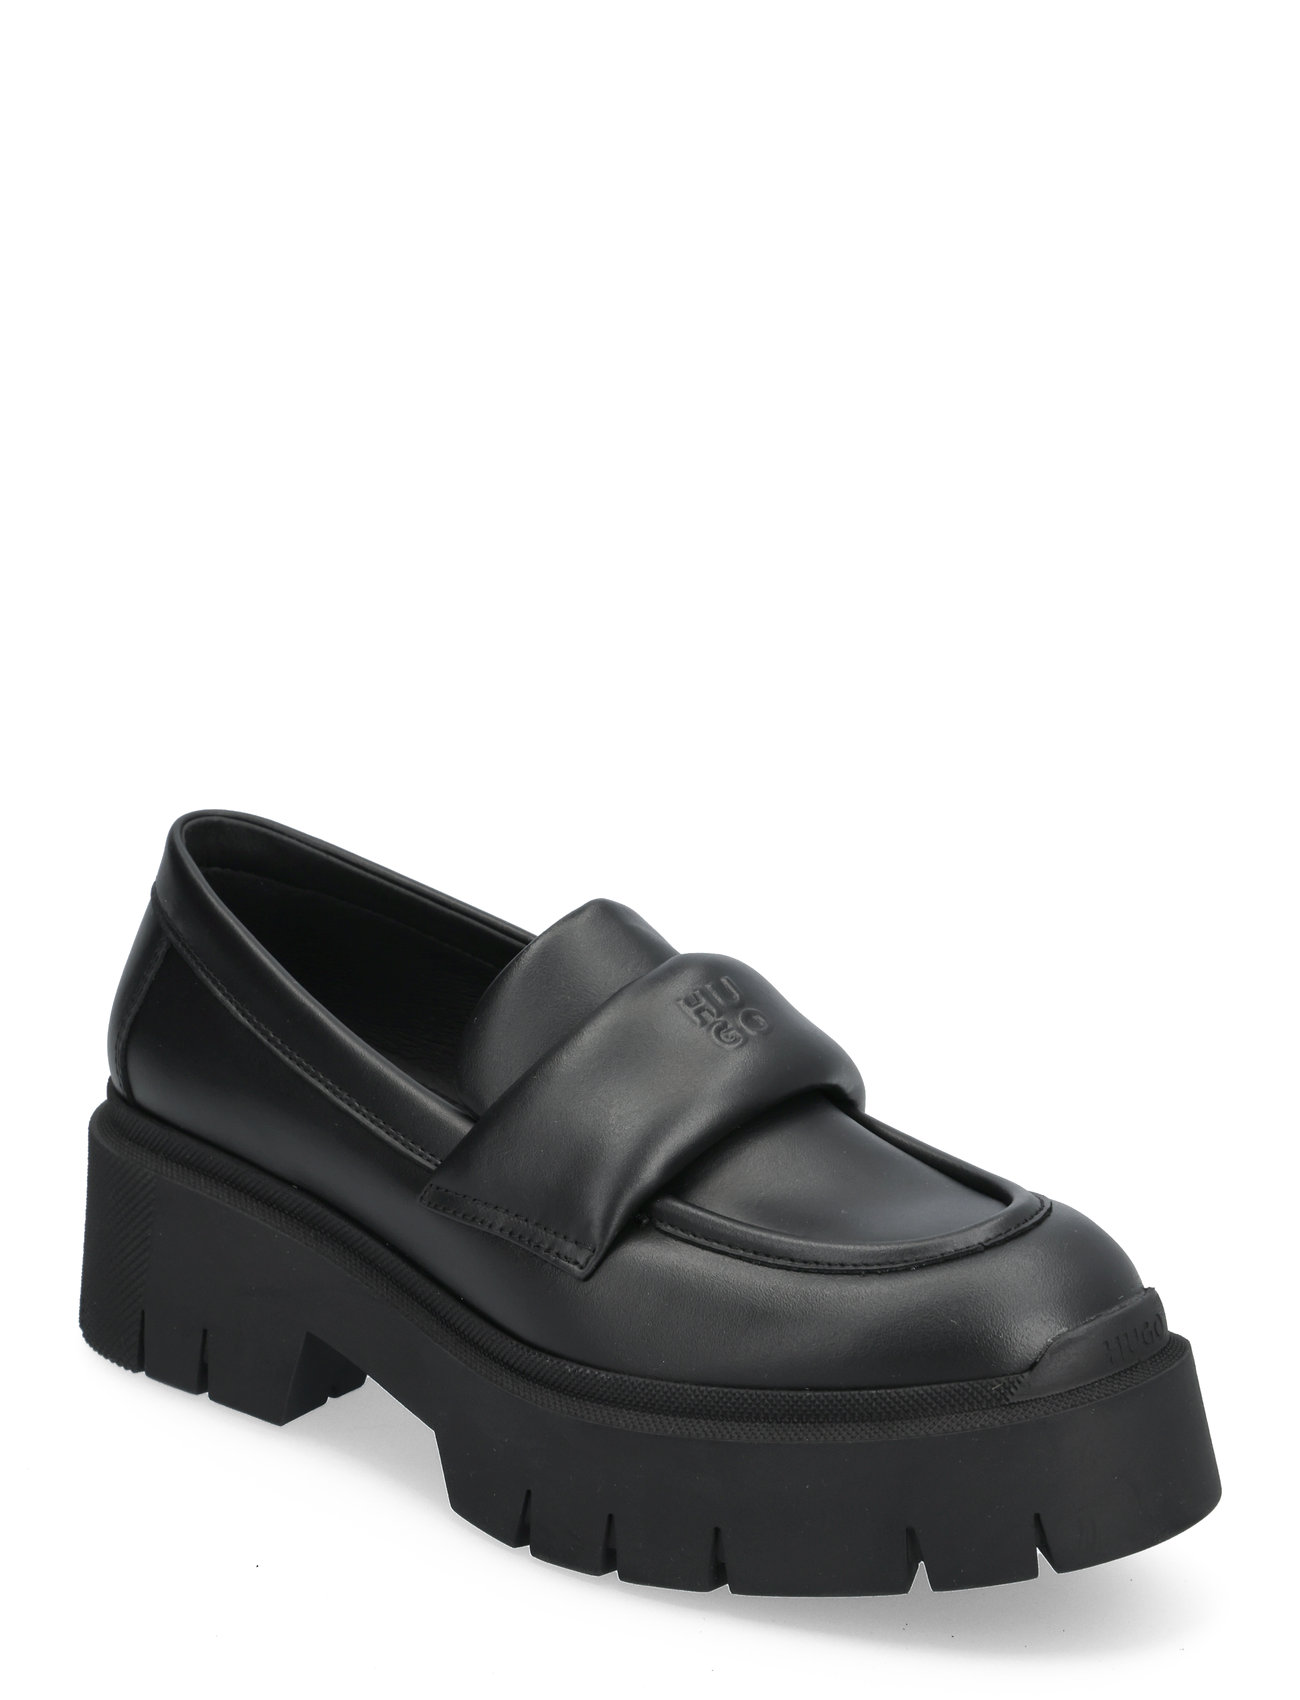 Kris_Loafer_Napd Shoes Heels Heeled Loafers Black HUGO